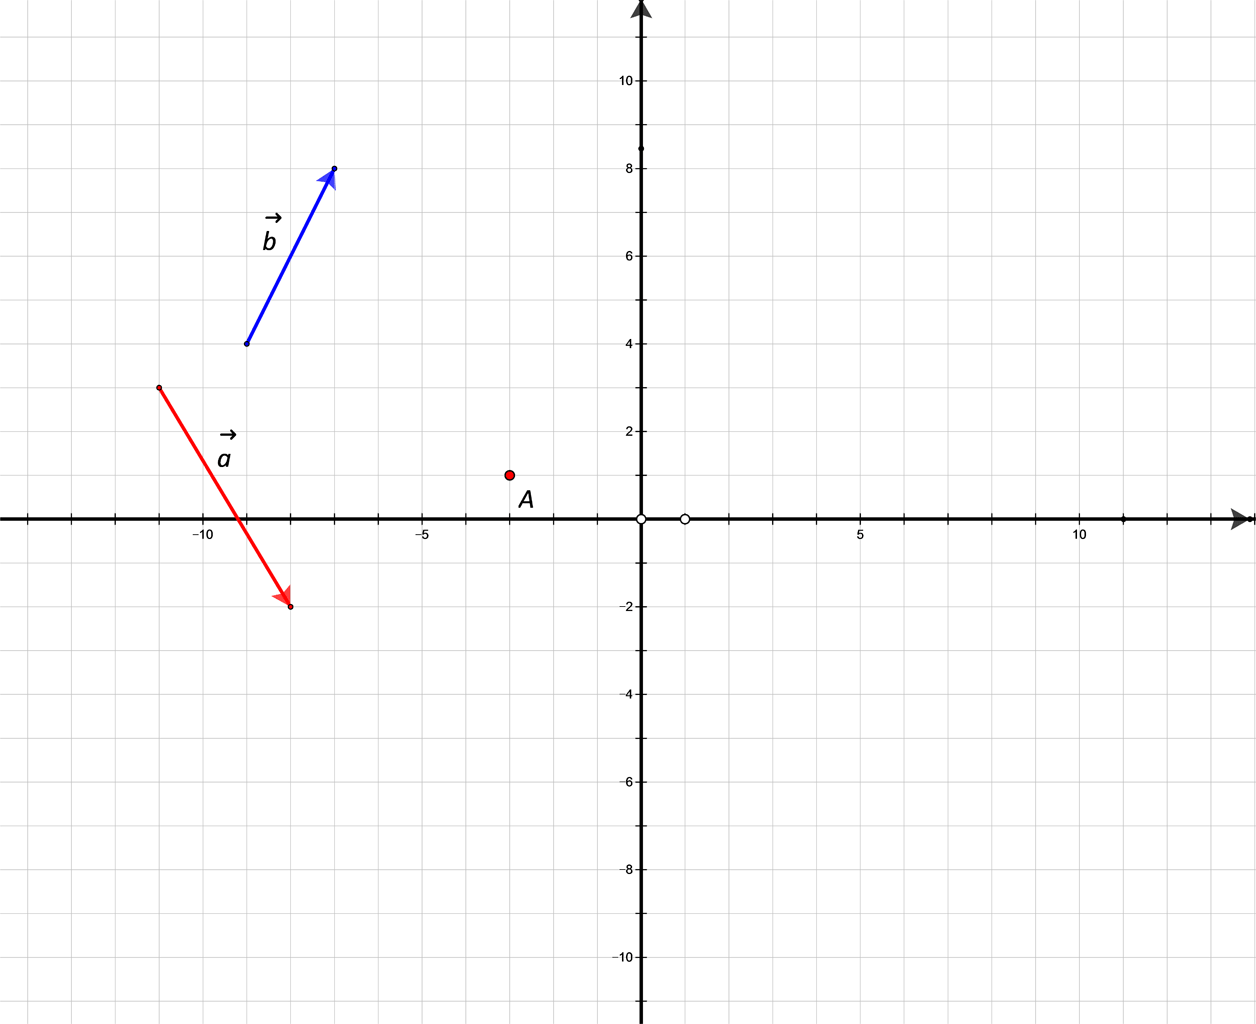 Slika prikazuje nekolinearne vektore a i b u pravokutnom koordinatnom sustavu u ravnini.